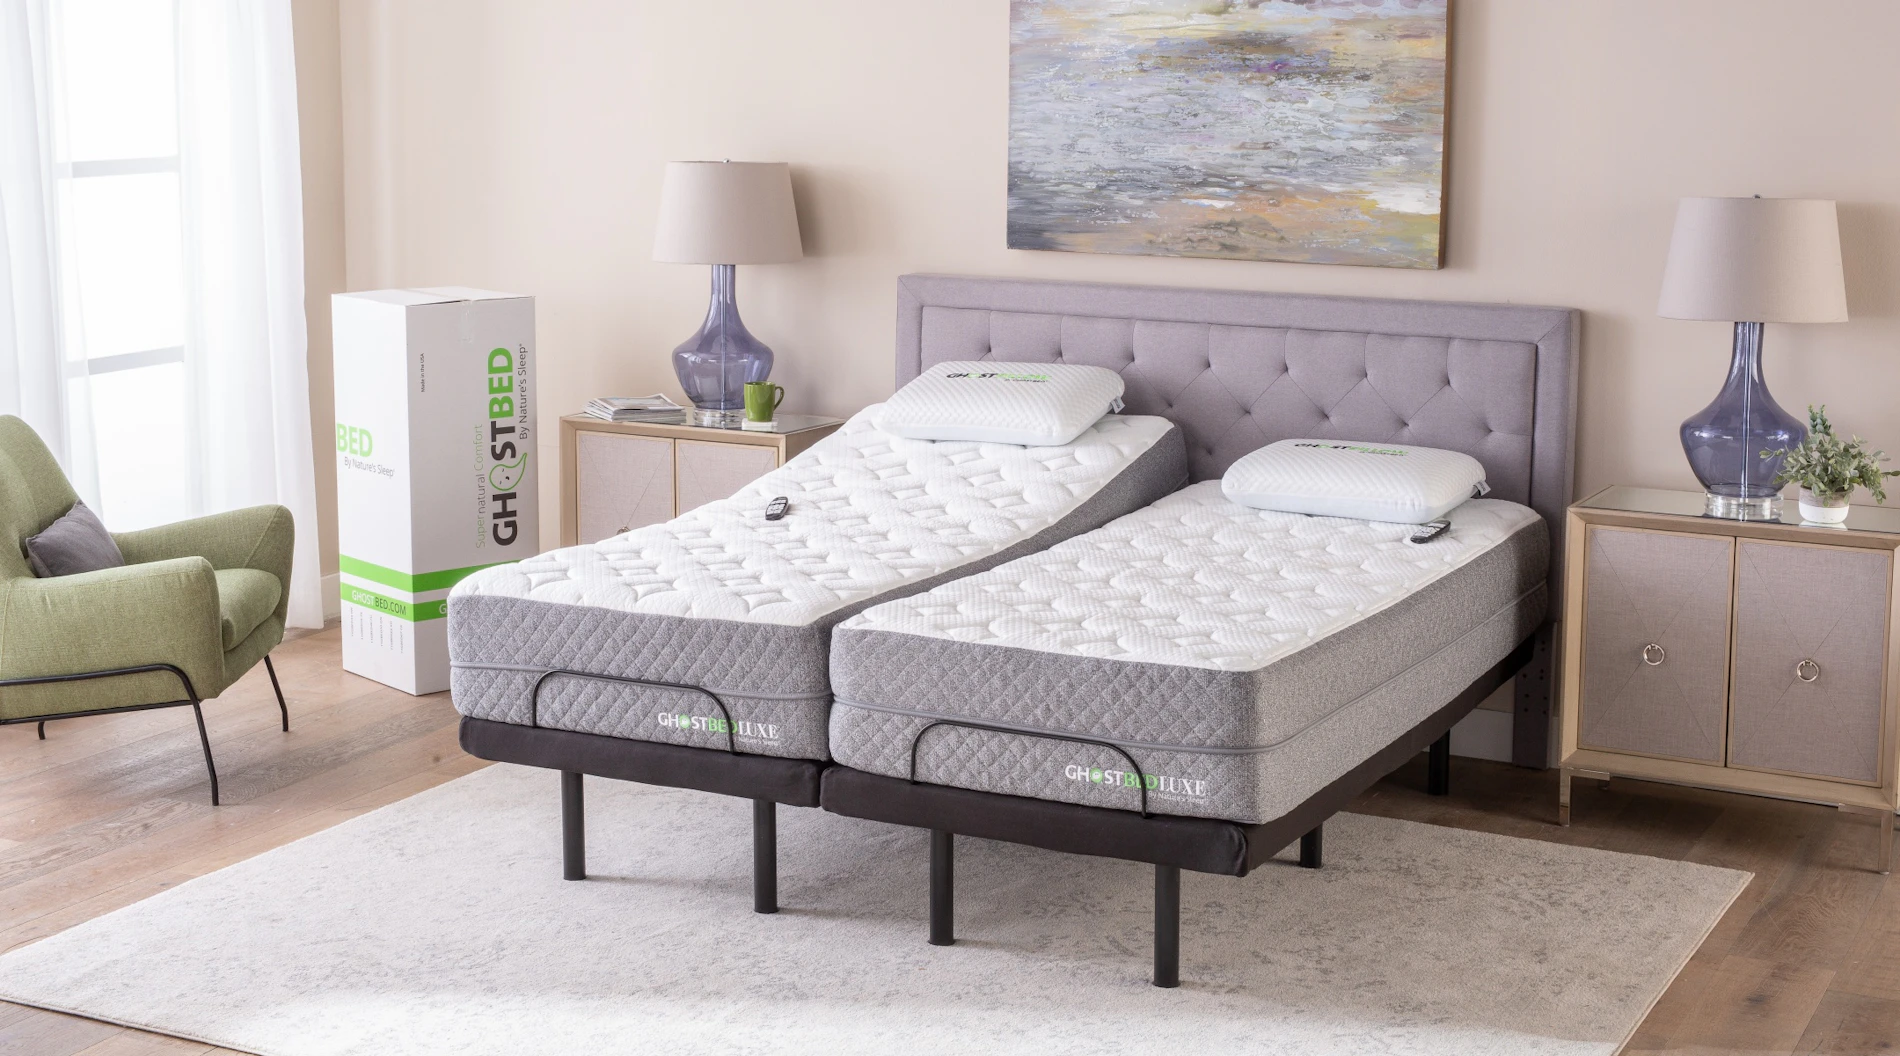 Split King Sheet Set - Adjustable Bed Bedding